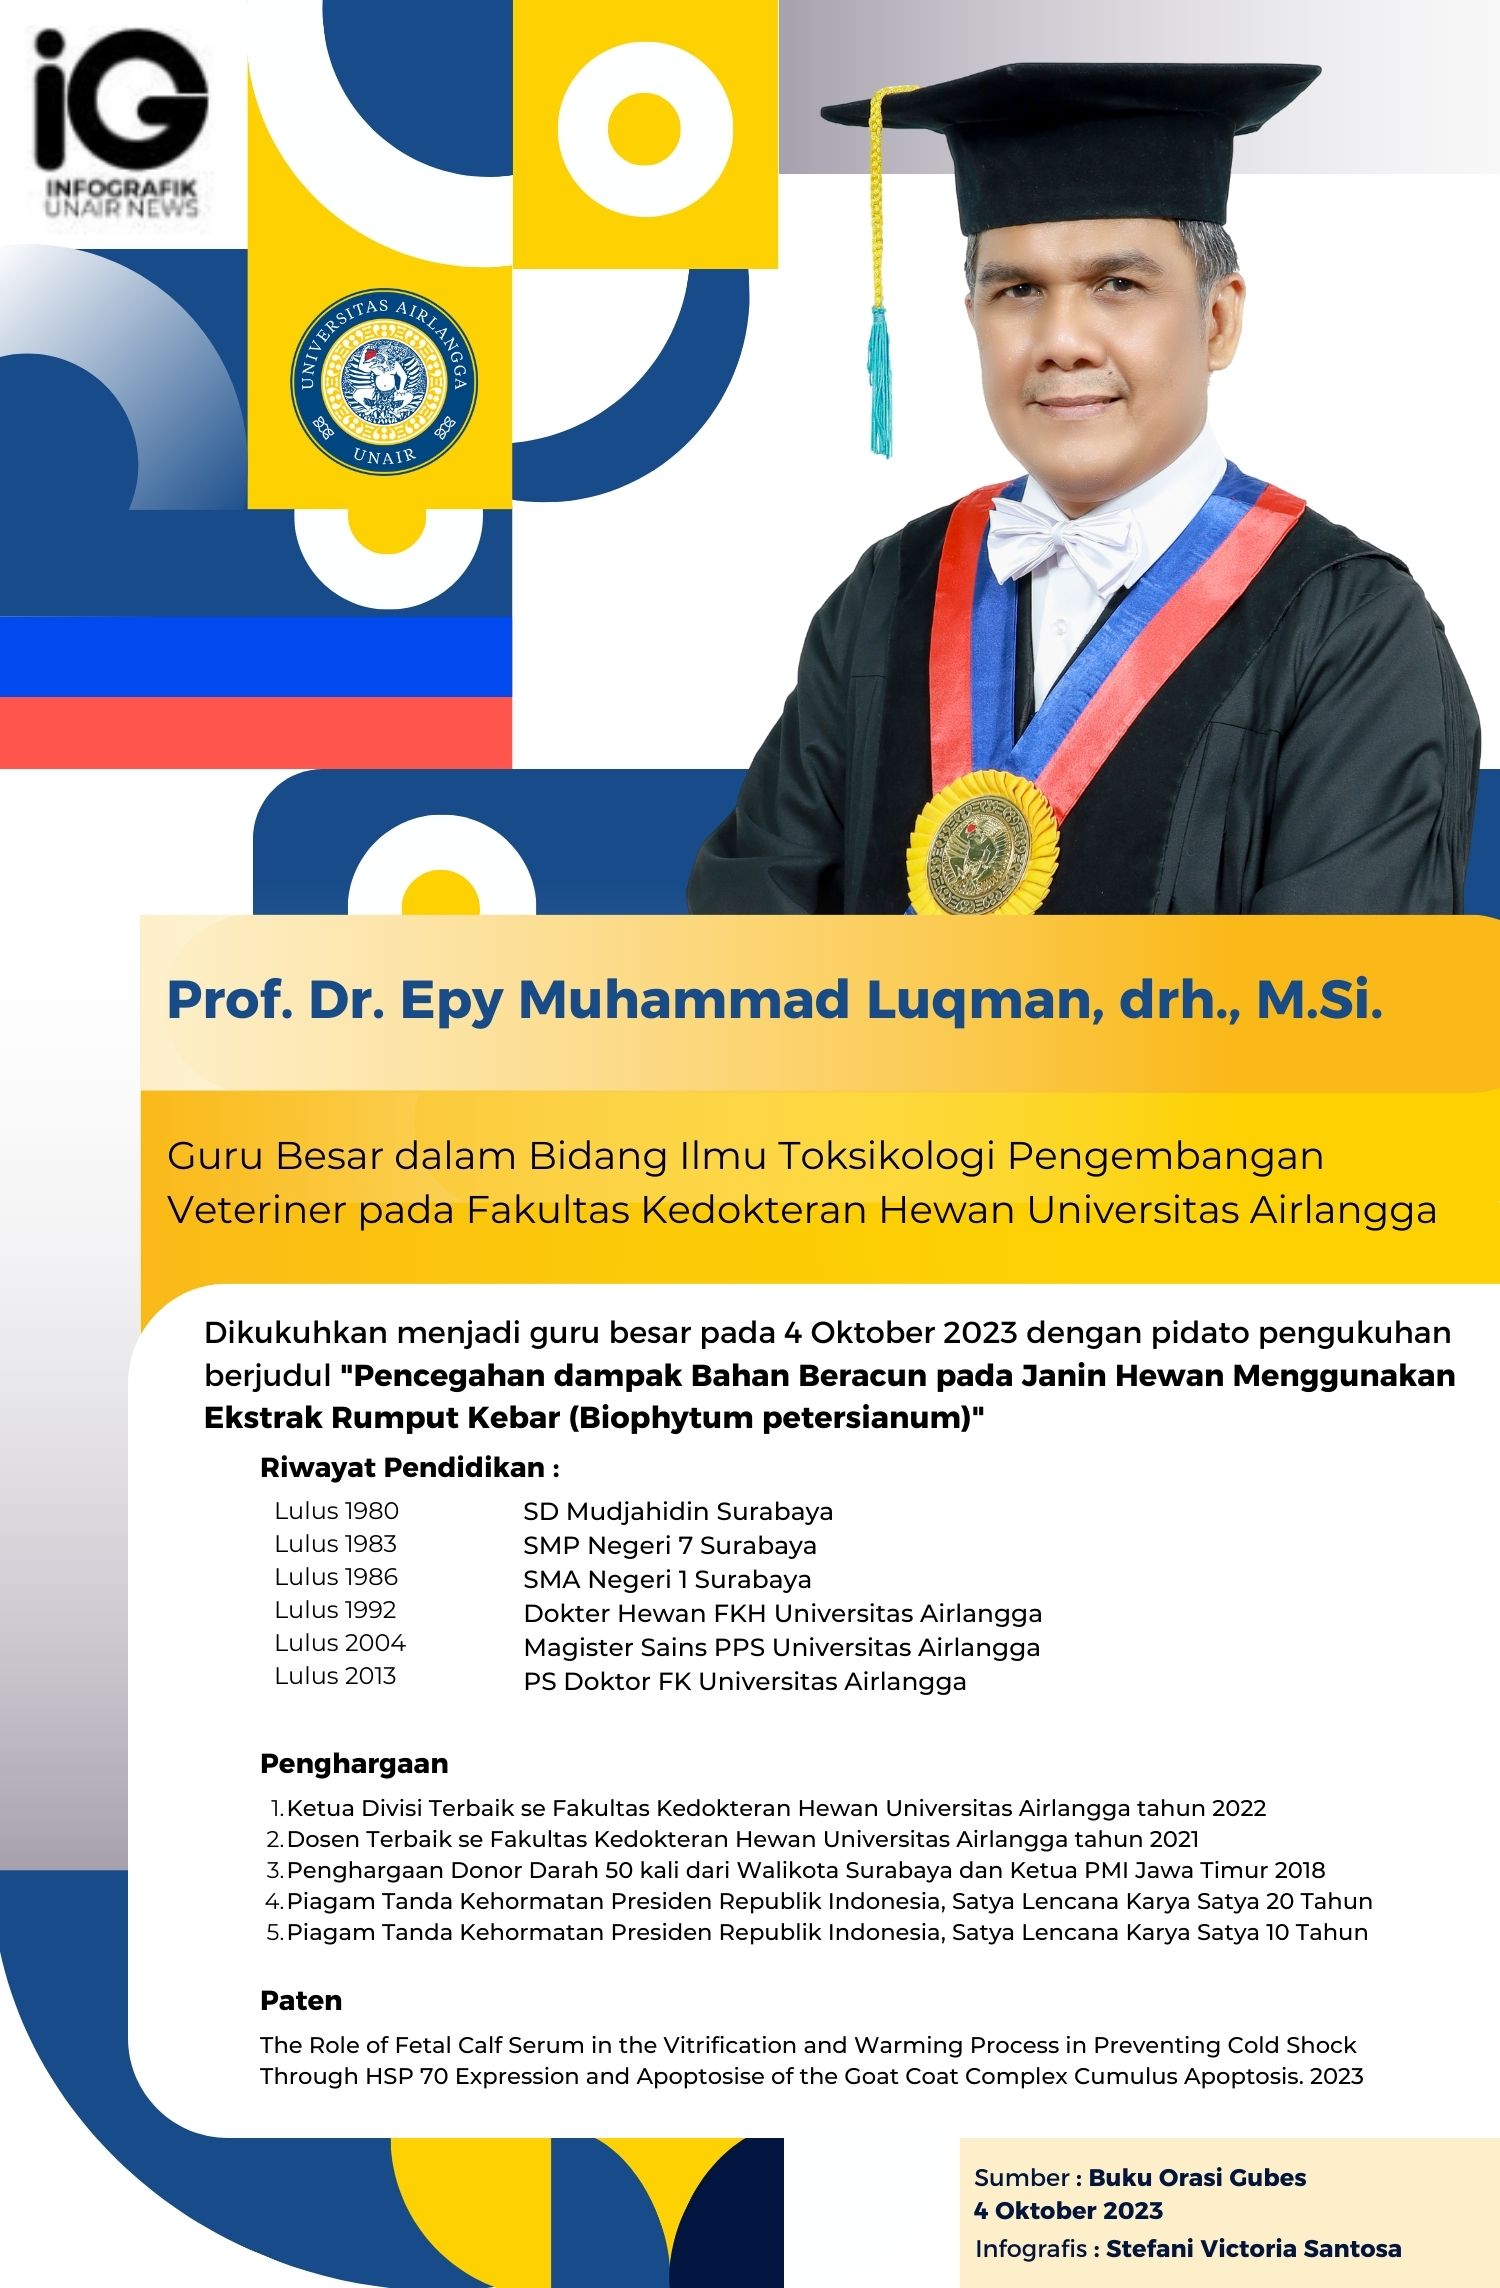 Infografik: Profil Guru Besar Prof. Dr. Epy Muhammad Luqman, drh., M.Si.